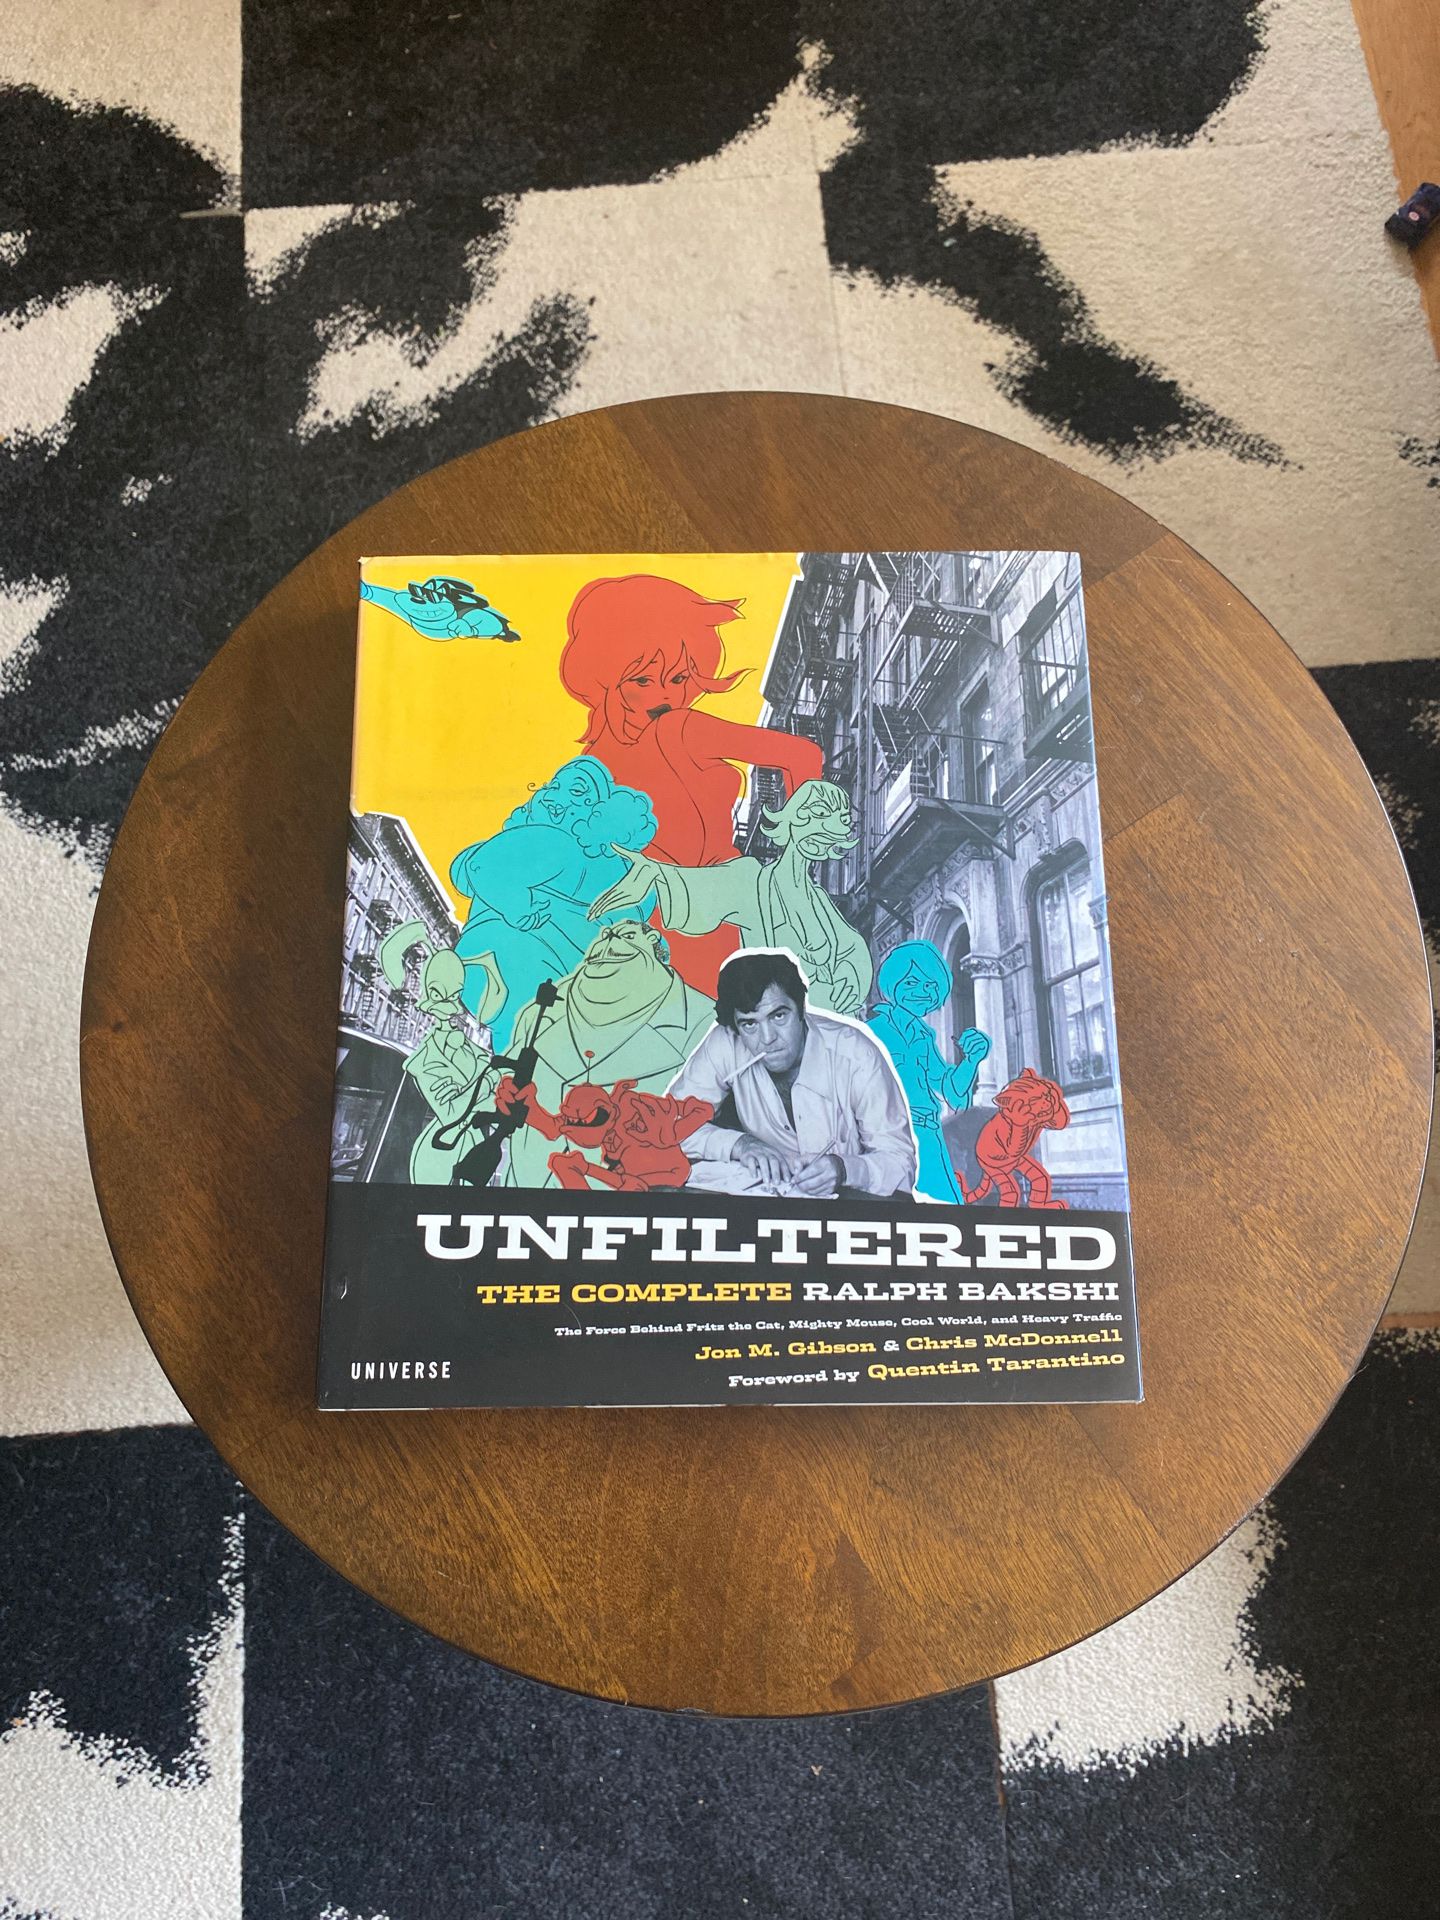 Ralph Bakshi “Unfiltered” book